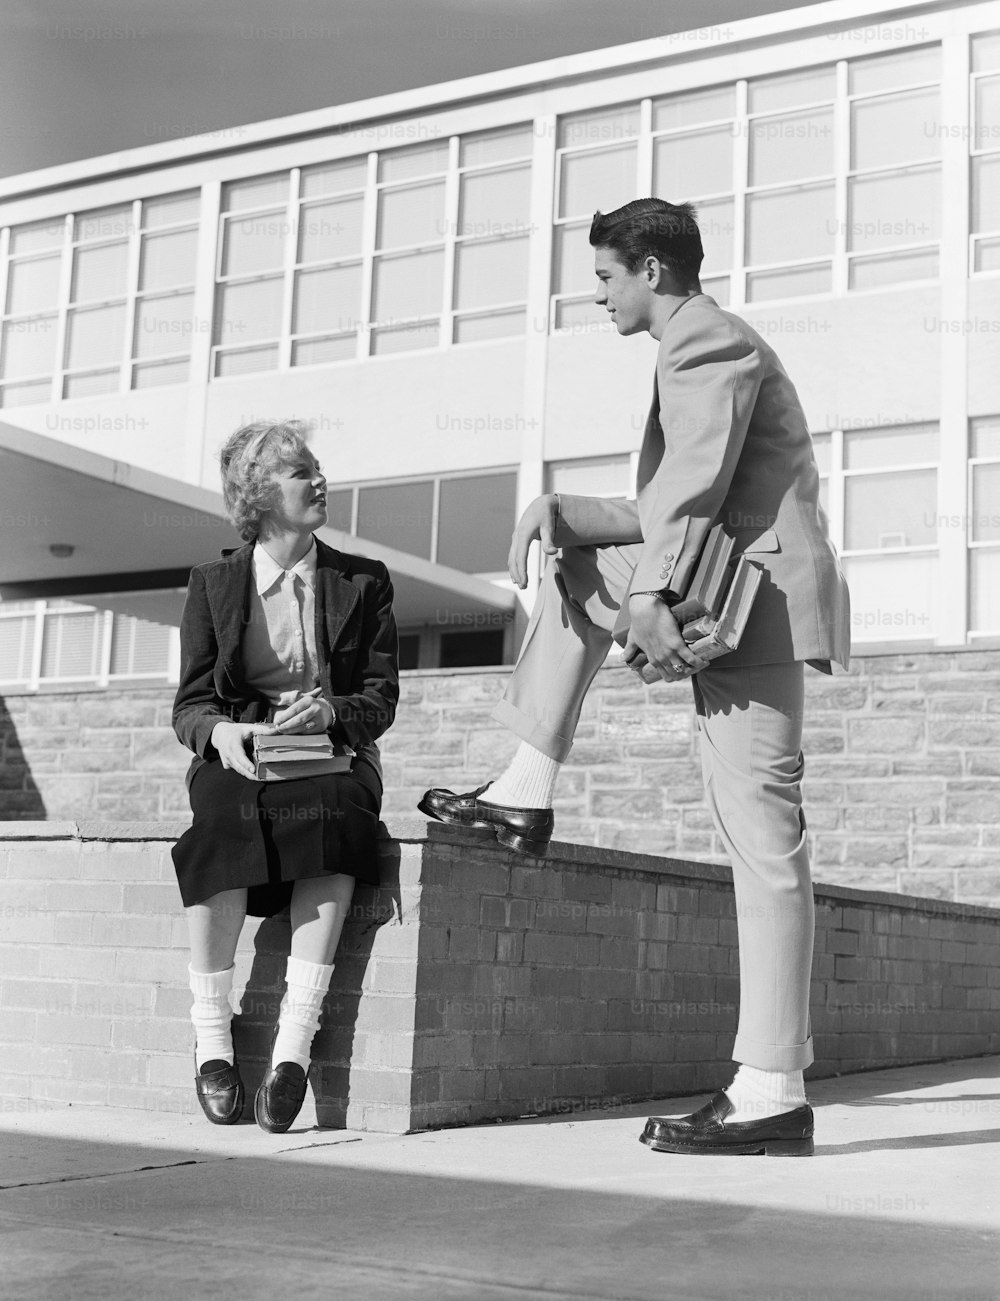 VEREINIGTE STAATEN - CIRCA 1950er Jahre: Highschool-Mädchen sitzt an der Wand und spricht mit einem Teenager.